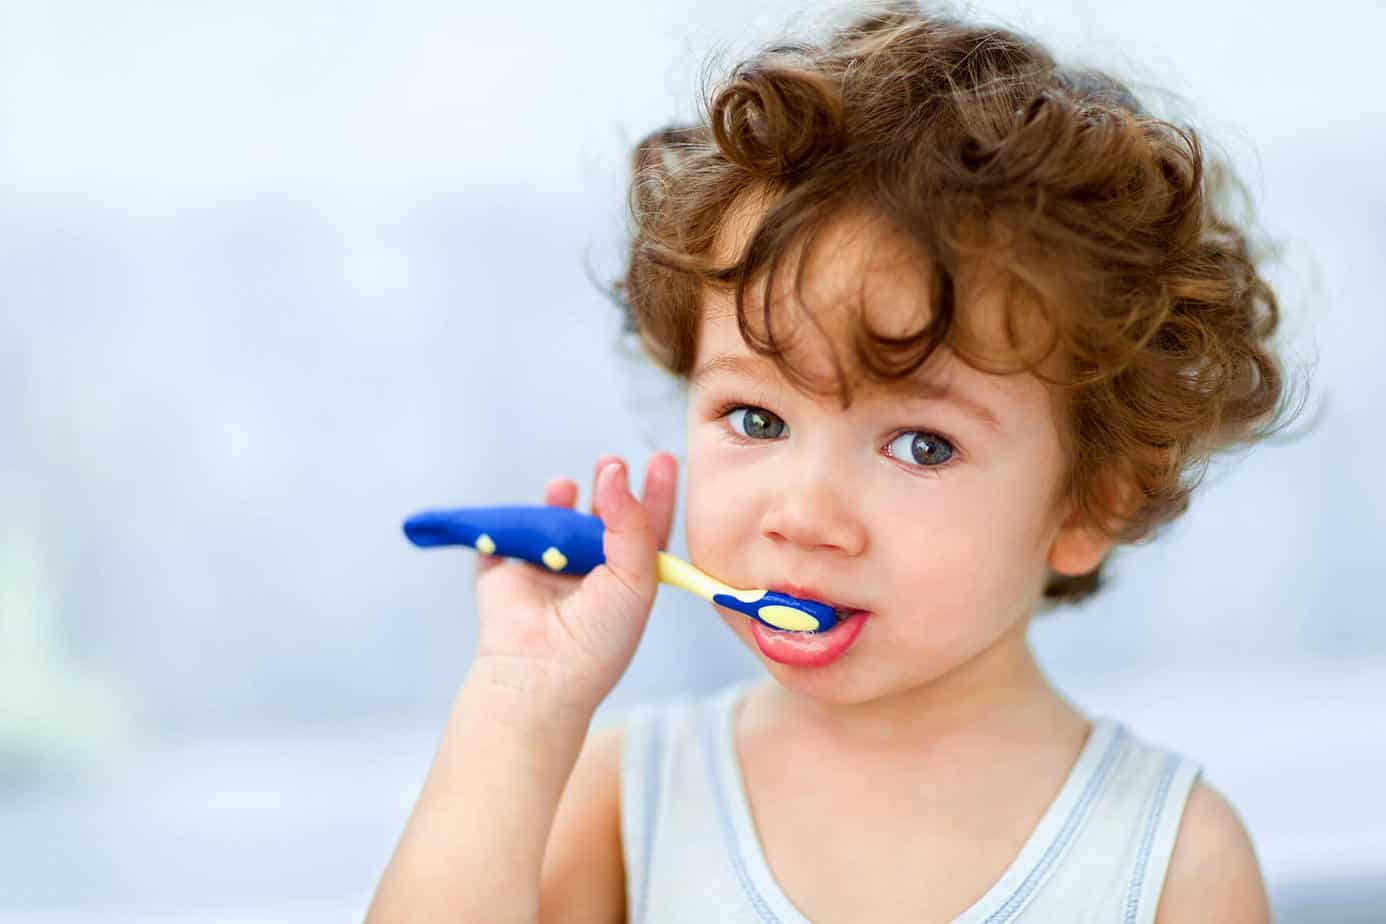 Labāko bērnu zobu suku vērtējums 2020. gadam